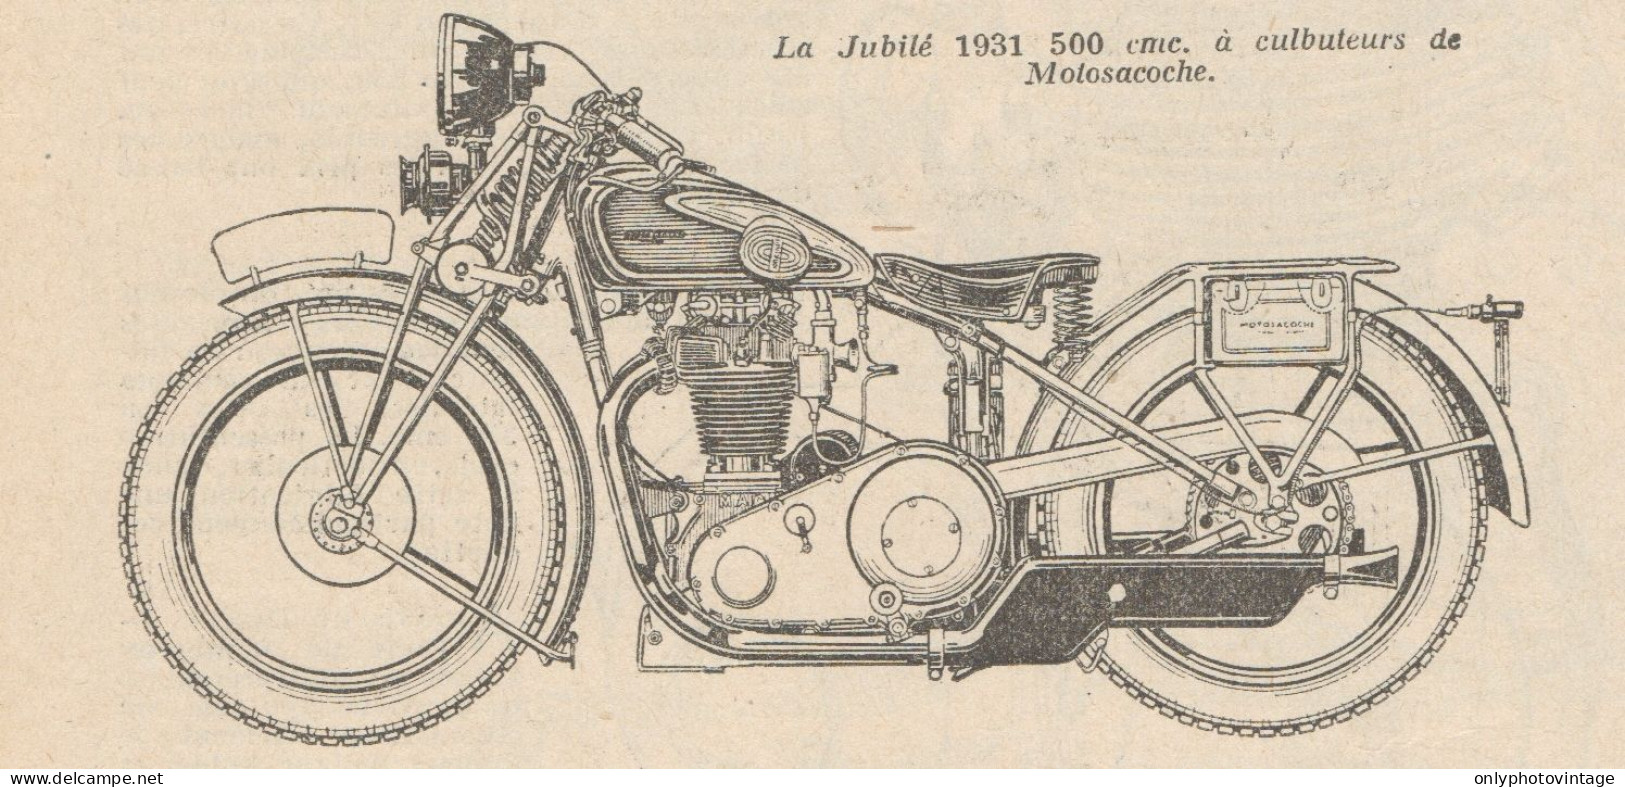 Motocyclette Jubilé 500 Cmc. - Pubblicità D'epoca - 1930 Old Advertising - Werbung